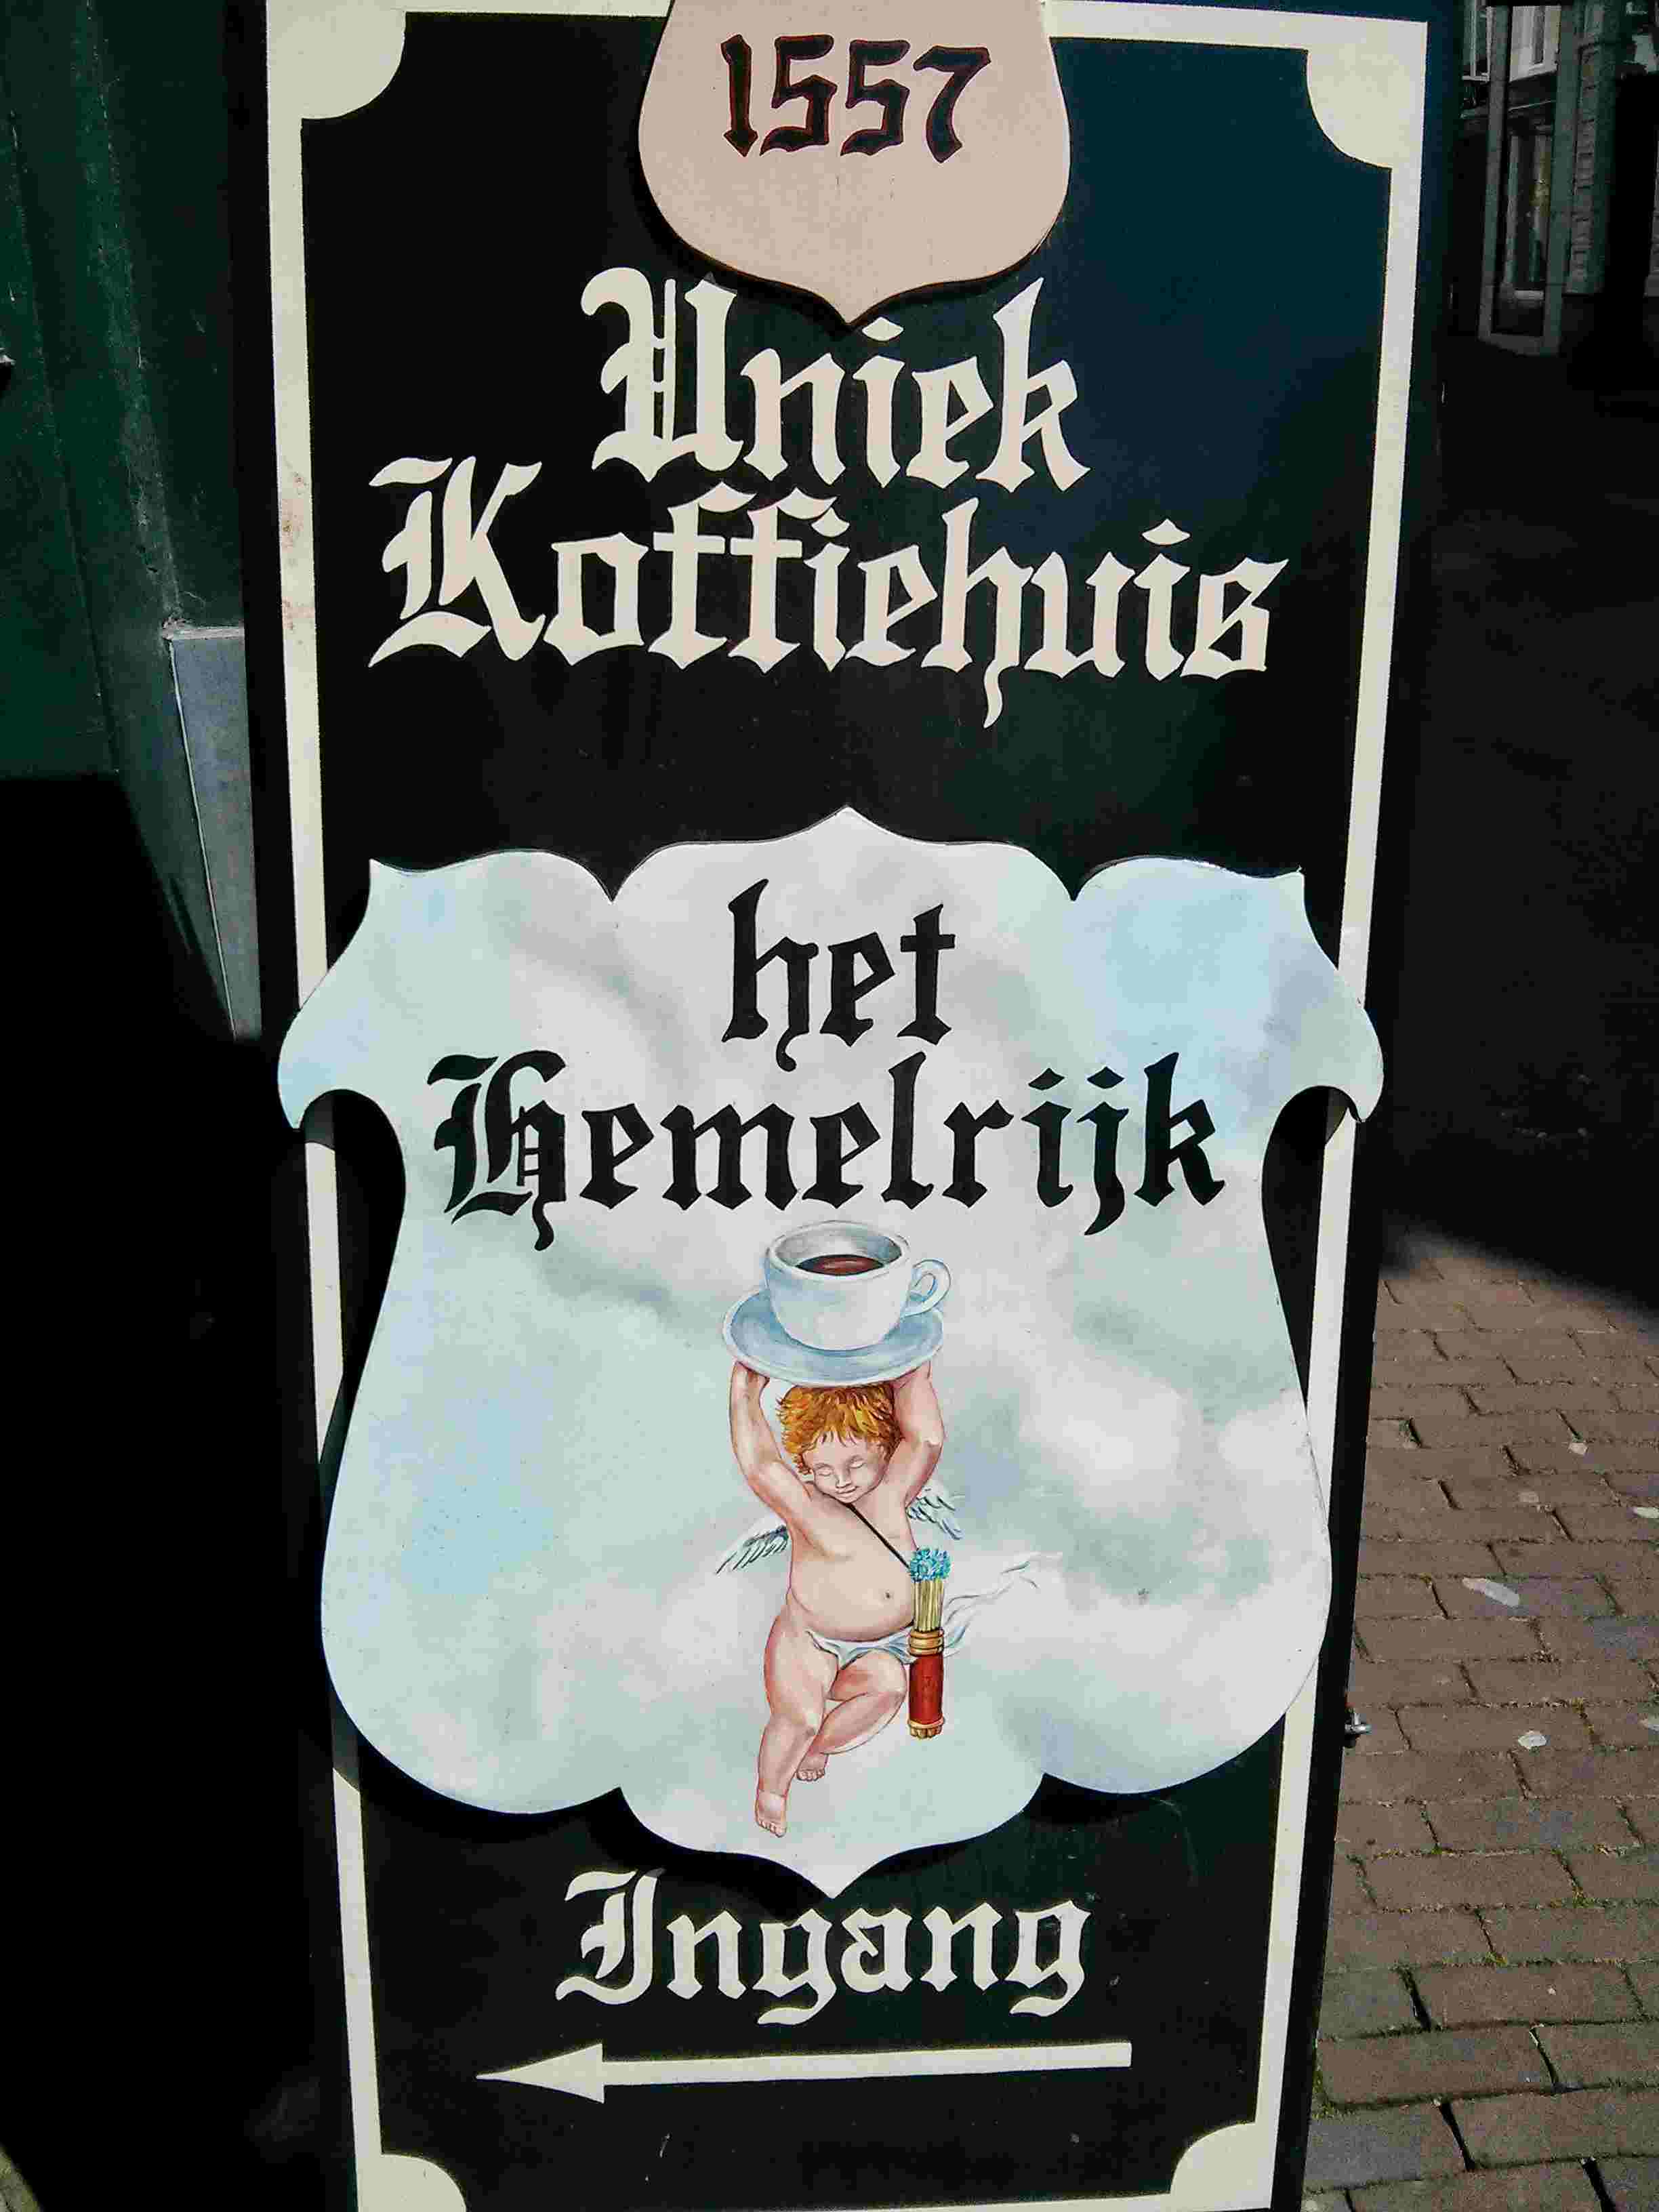 Het Hemelrijk in Arnheim Eingangschild